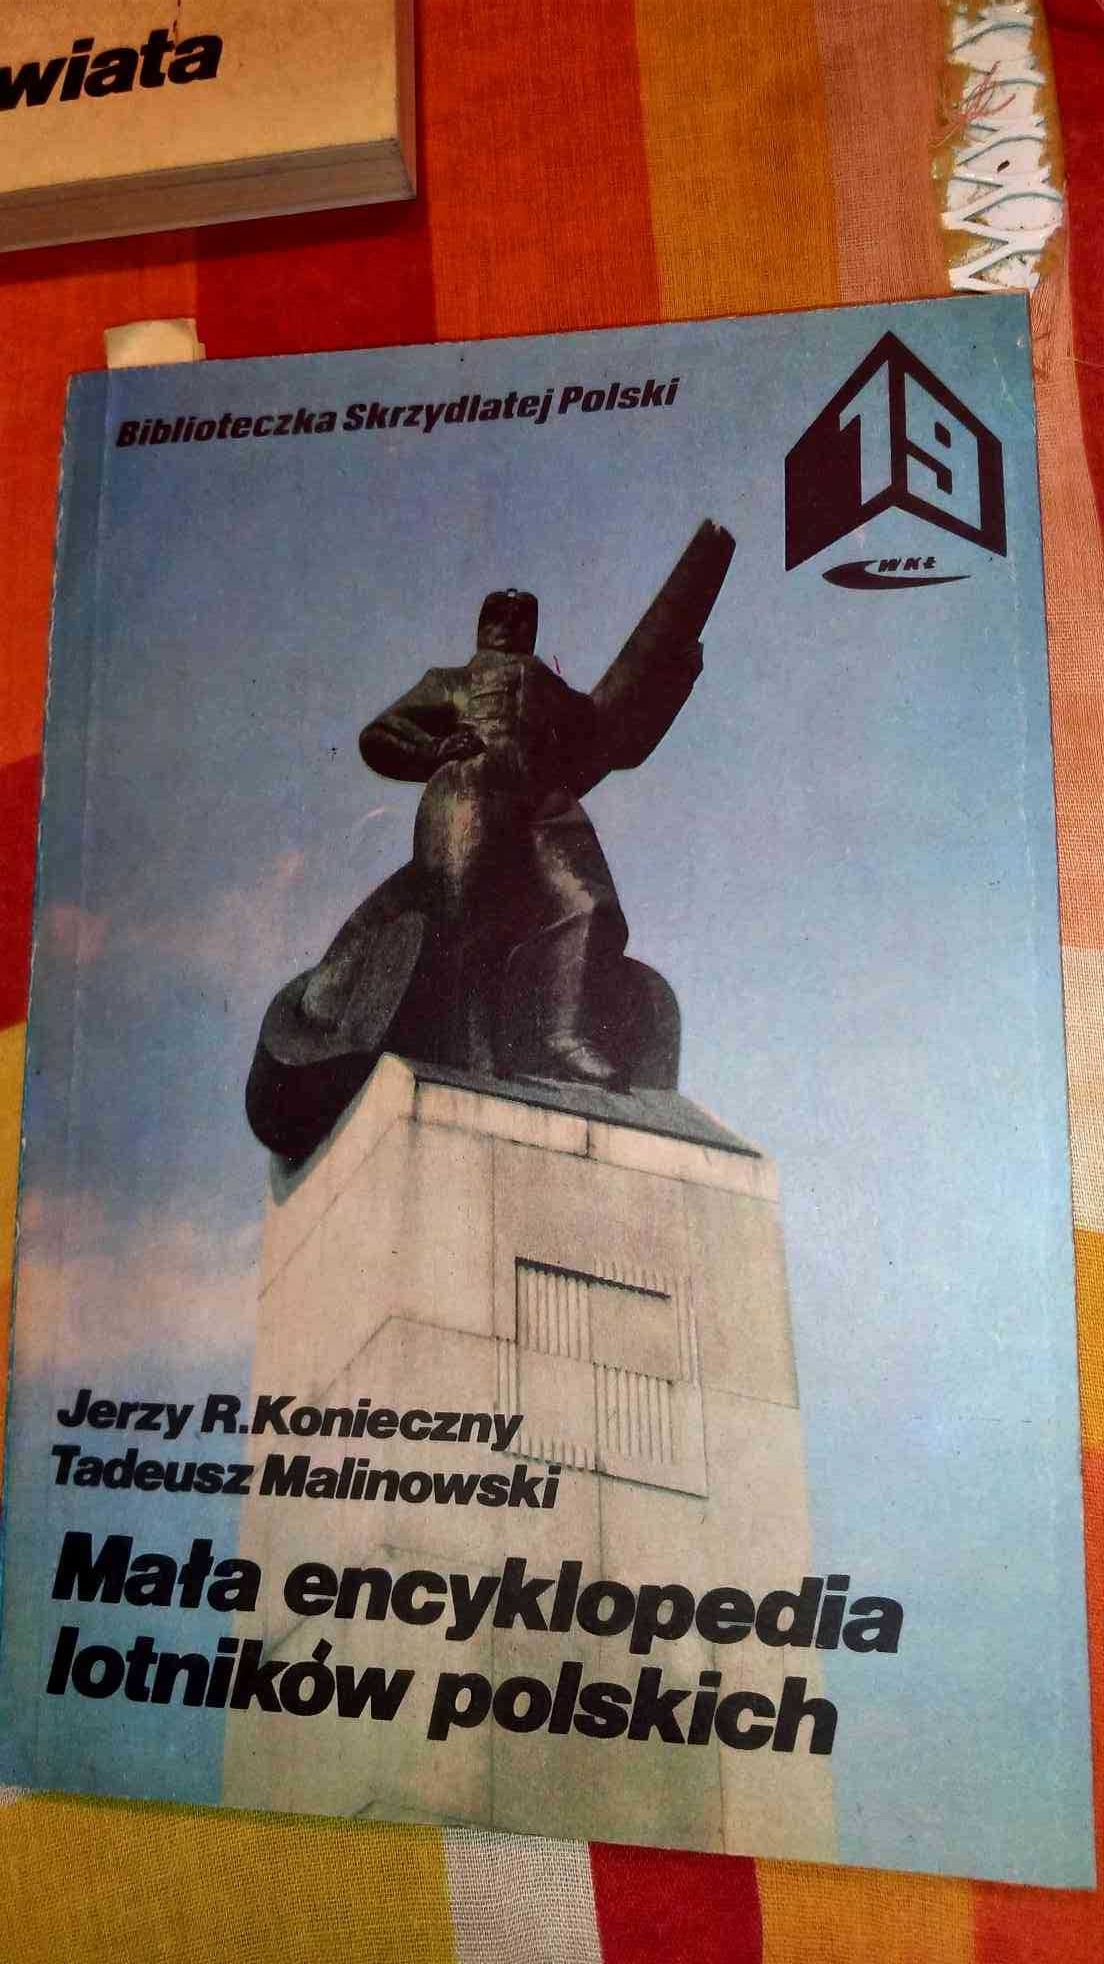 Tadeusz Malinowski
Mała encyklopedia lotników polskich